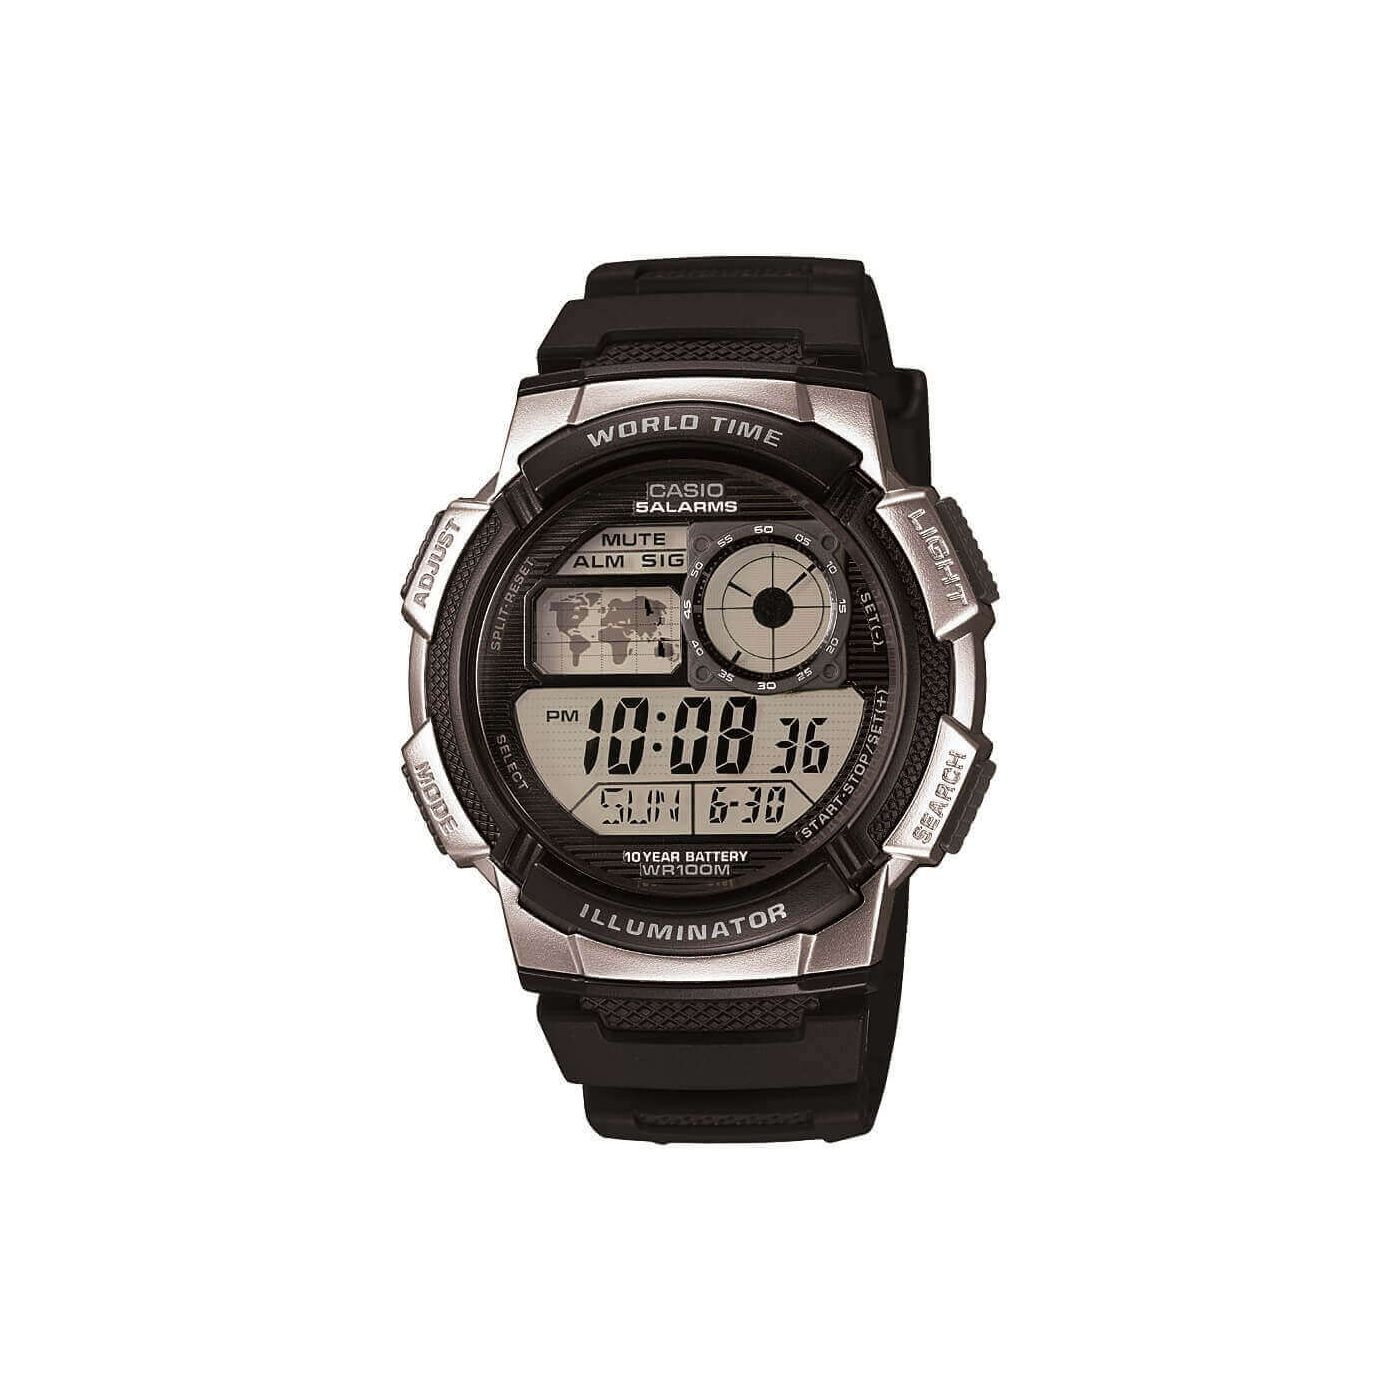 Casio World Time Men's Watch in Black AE-1000W-1A2VEF